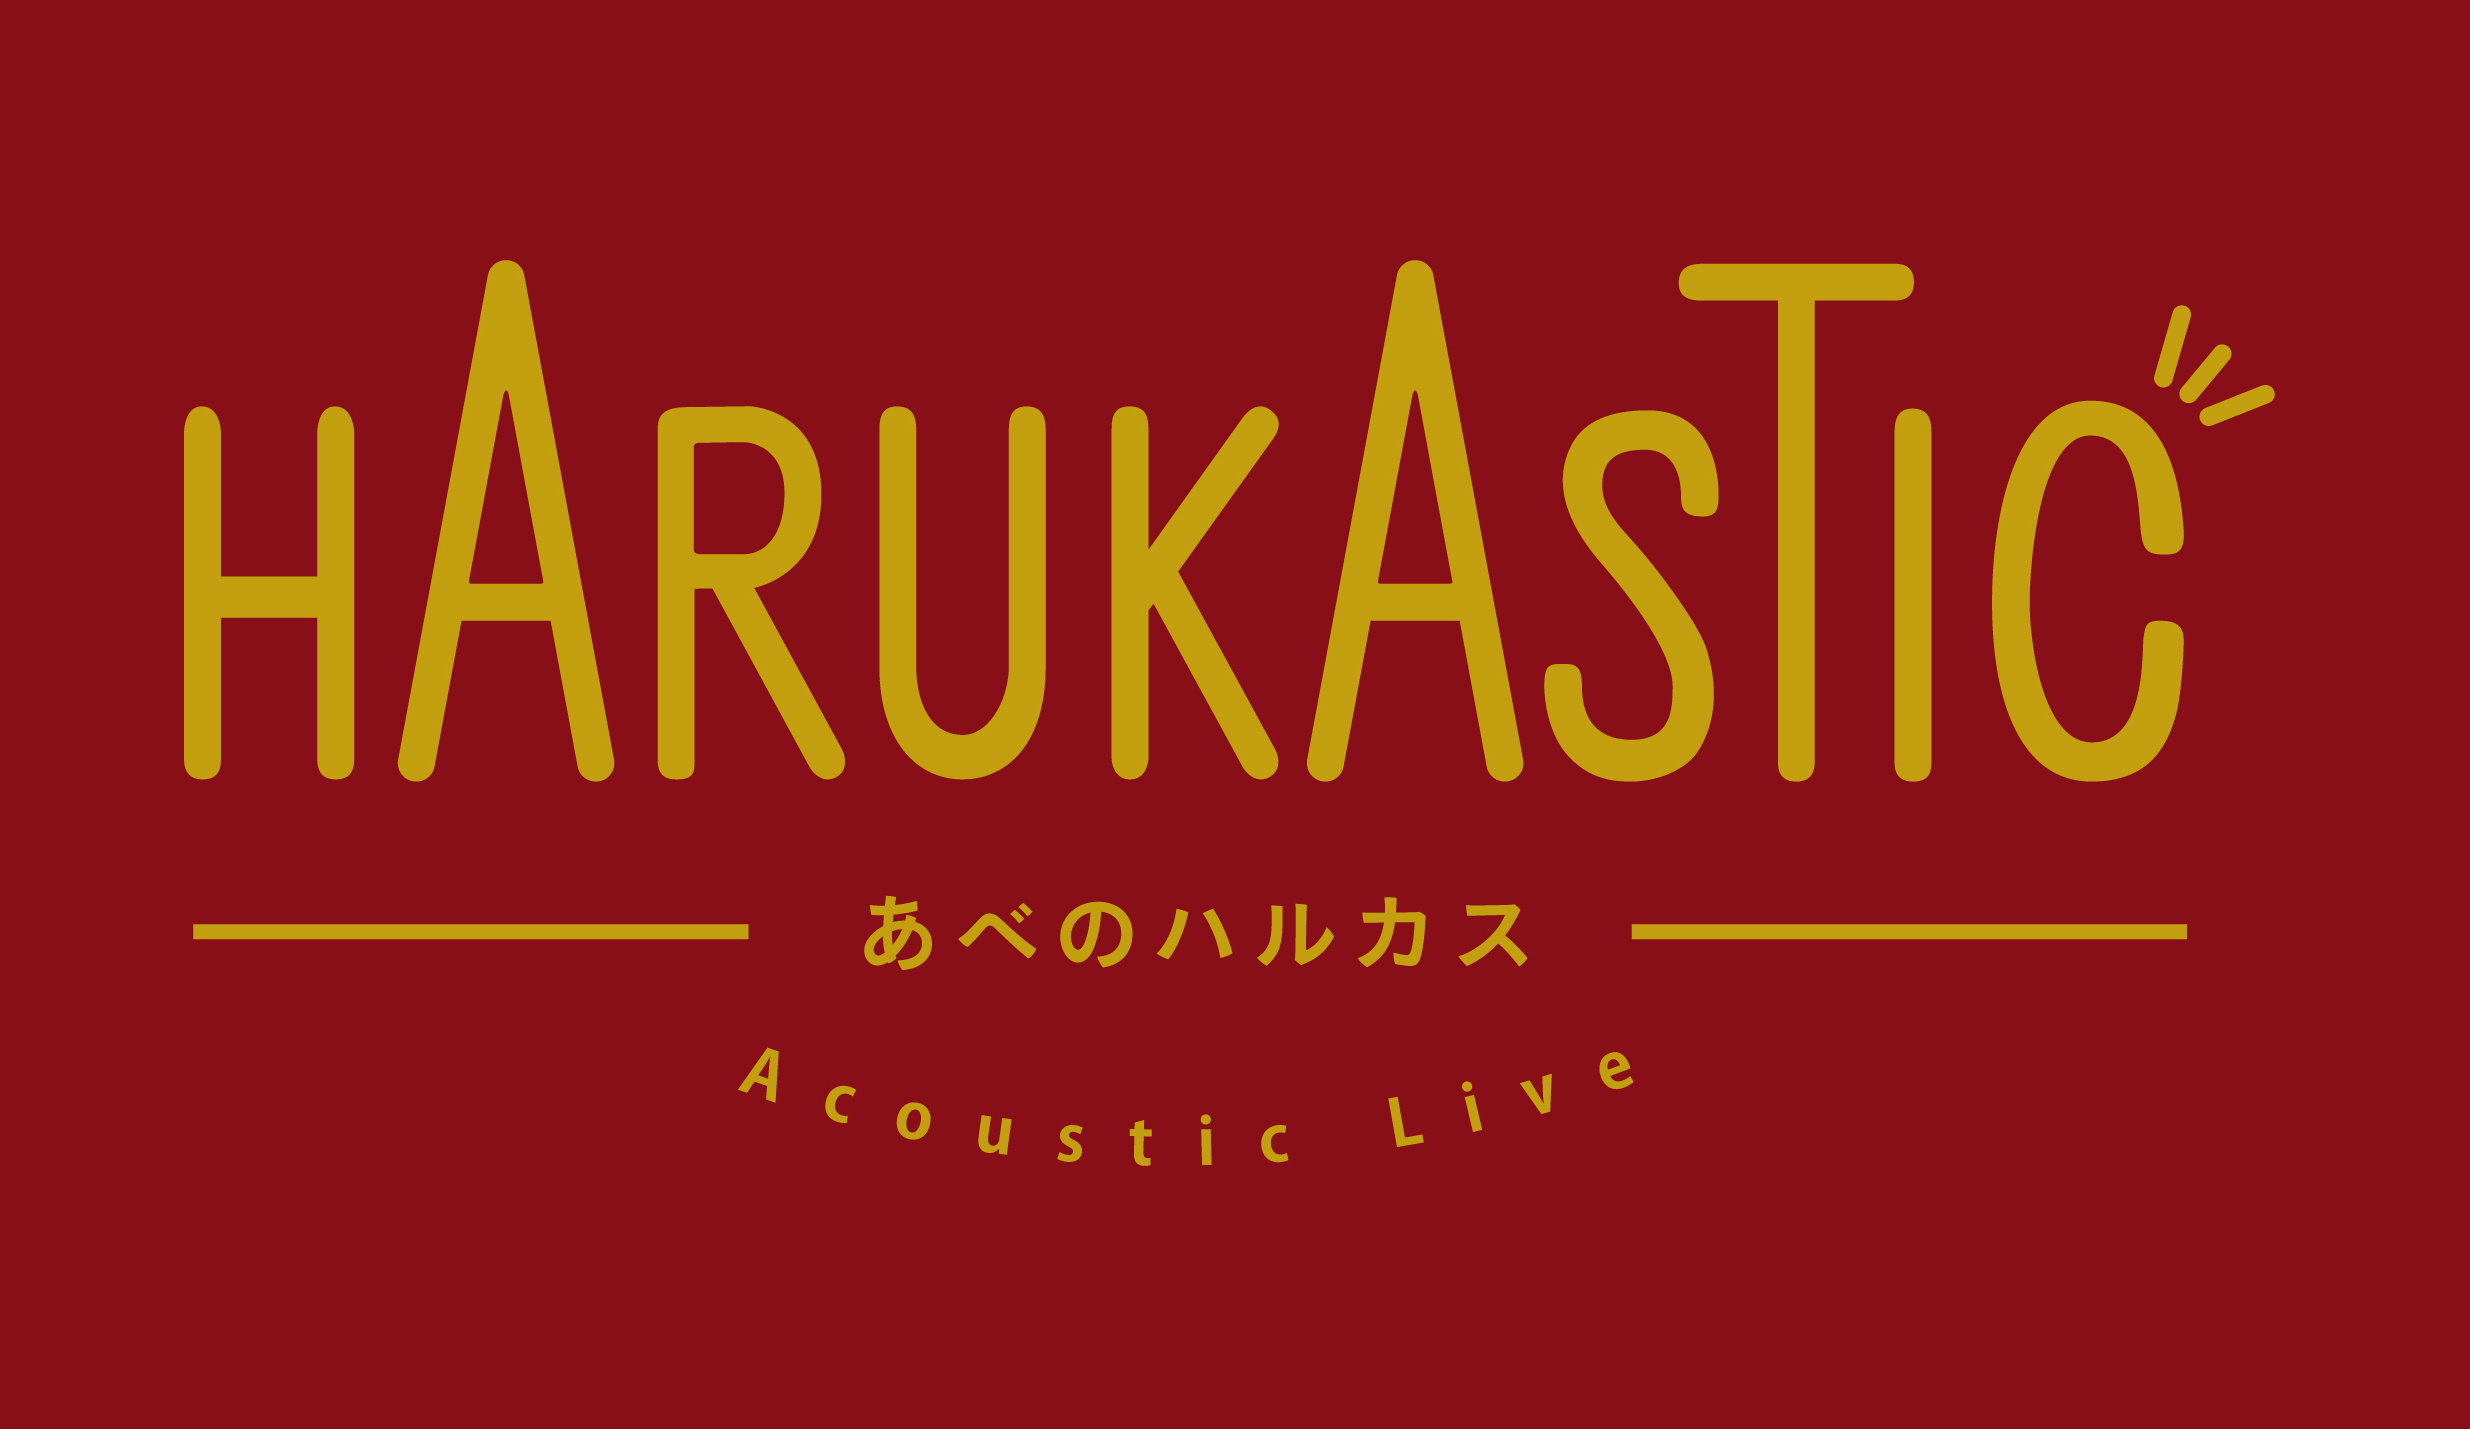 【HARUKASTIC】-あべのハルカス-Acoustic Live